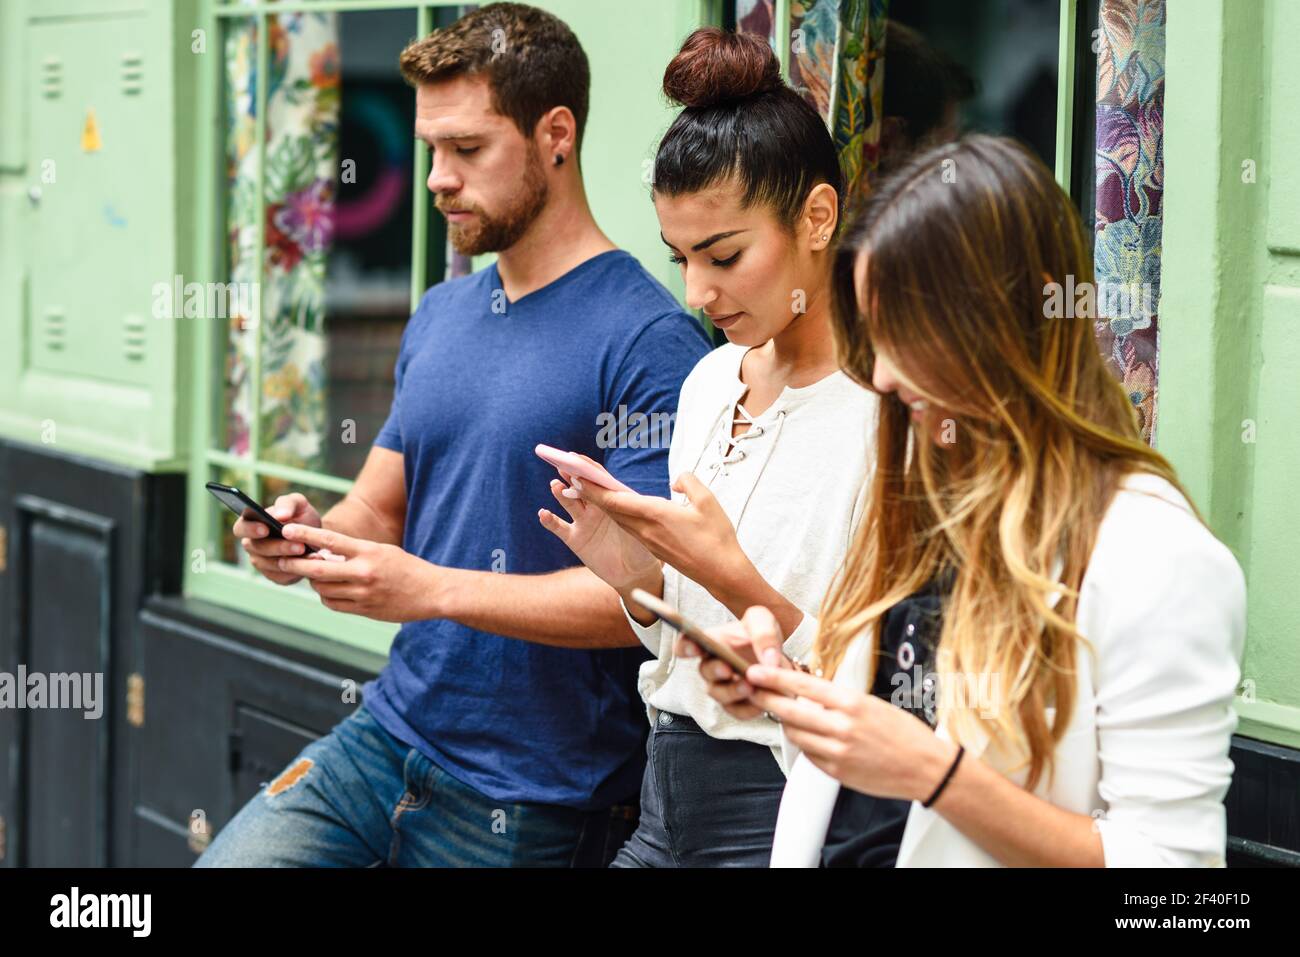 Multiethnische Gruppe von Menschen bei smart phone suchen, Konzepte über die Technologie sucht und Jugend Stockfoto